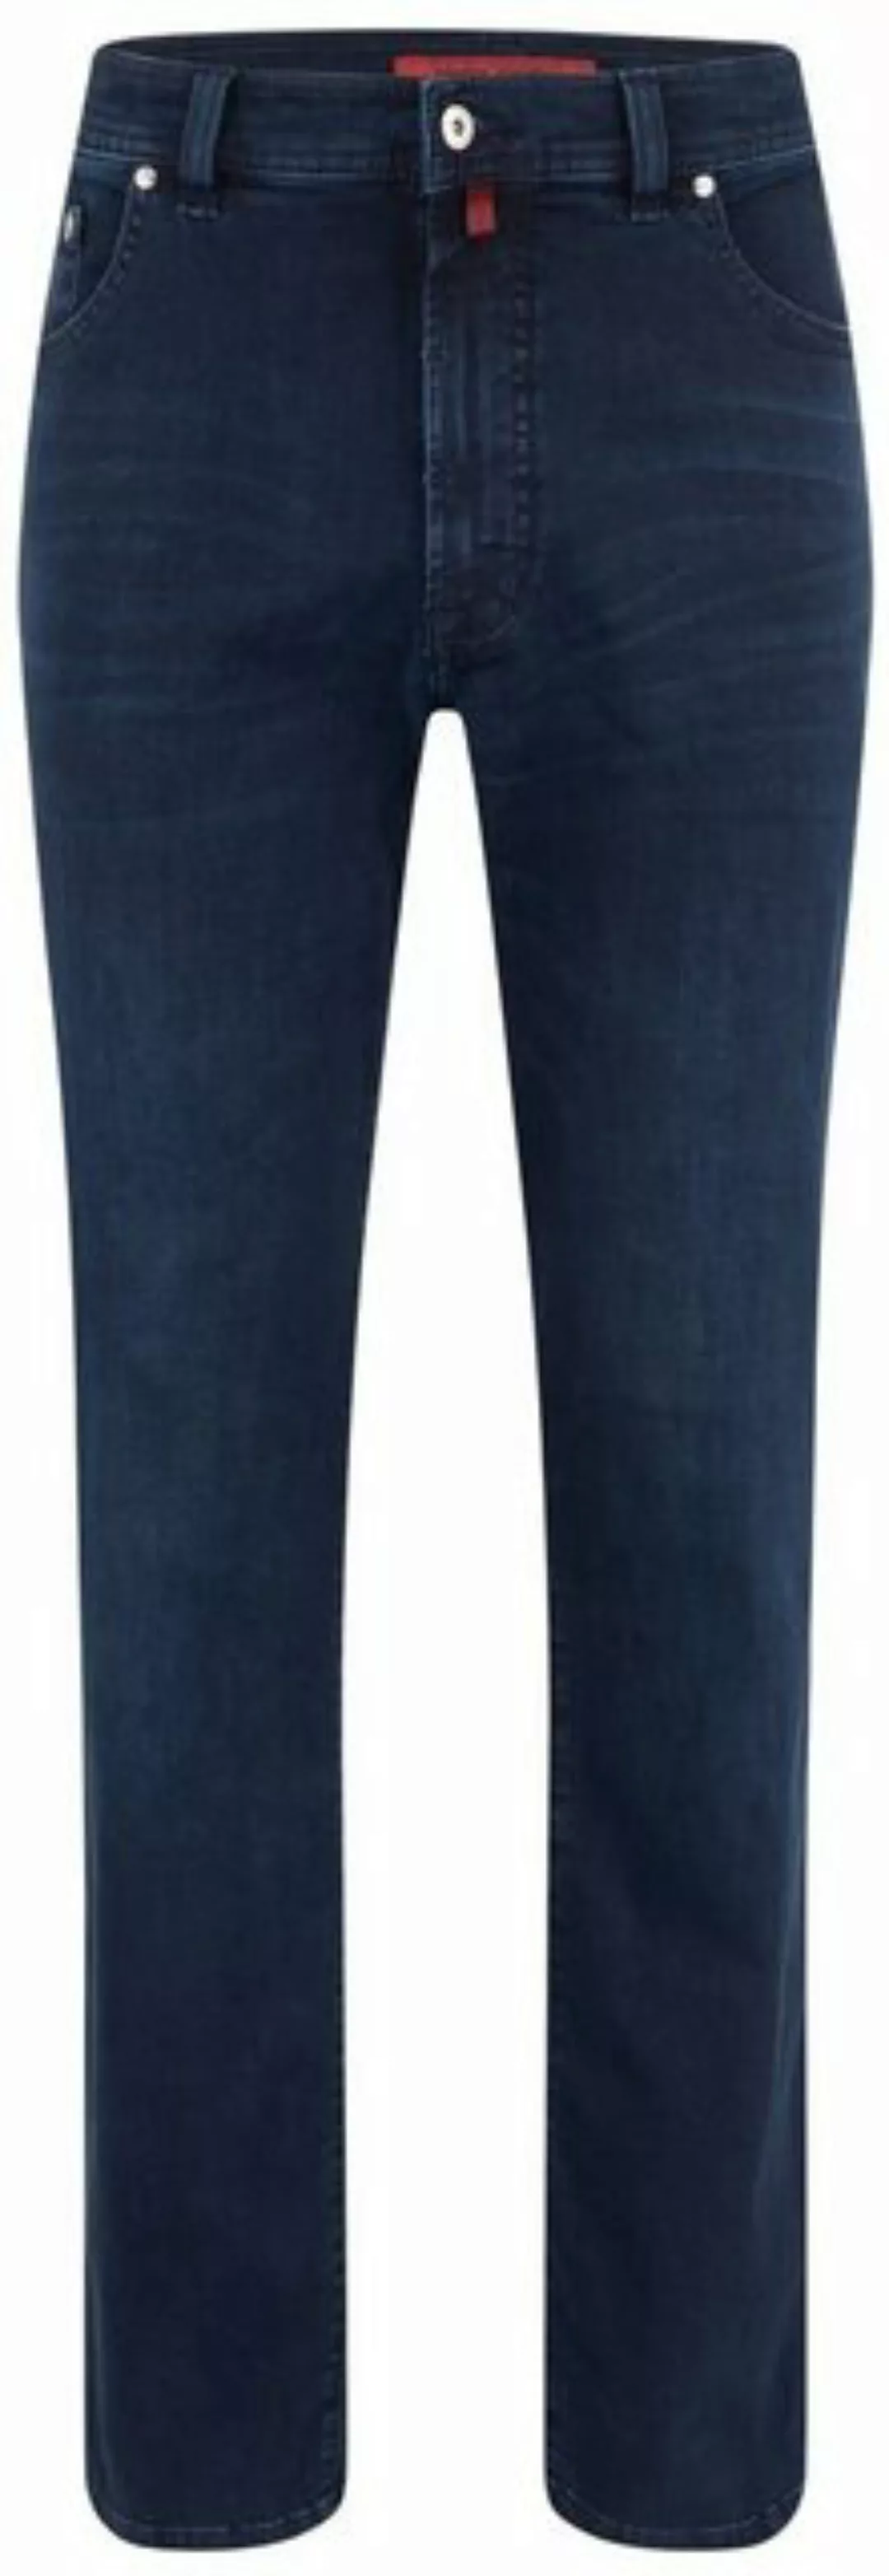 Pierre Cardin 5-Pocket-Jeans PIERRE CARDIN DIJON blue/black used 32310 7005 günstig online kaufen